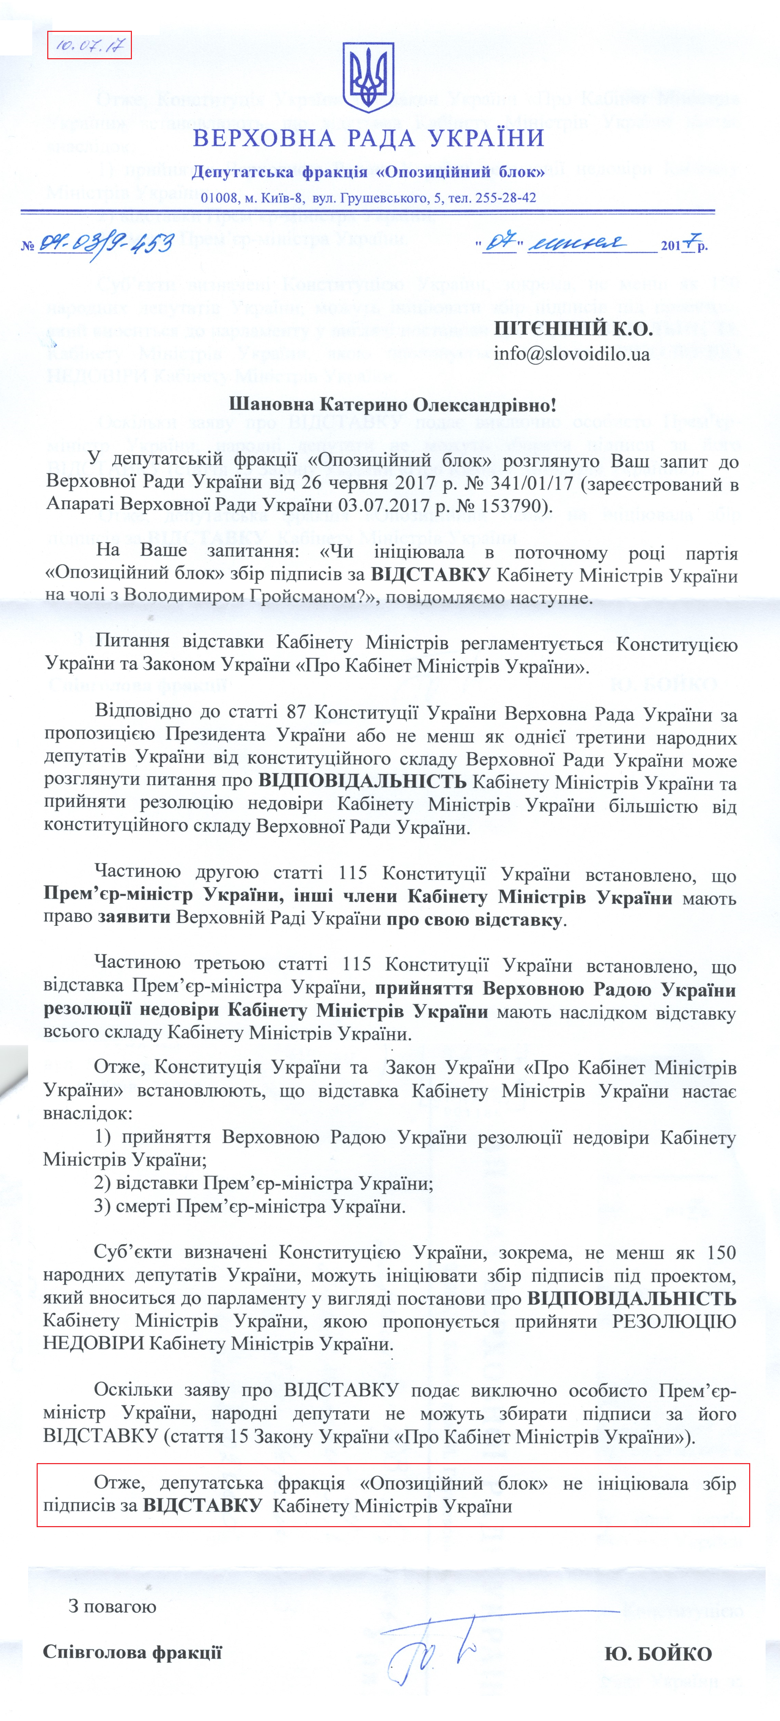 Обещанные Королевской подписи за отставку Кабинета министров Владимир Гройсман так и не были собраны – в Оппозиционном блоке опровергли заявление депутата фракции.